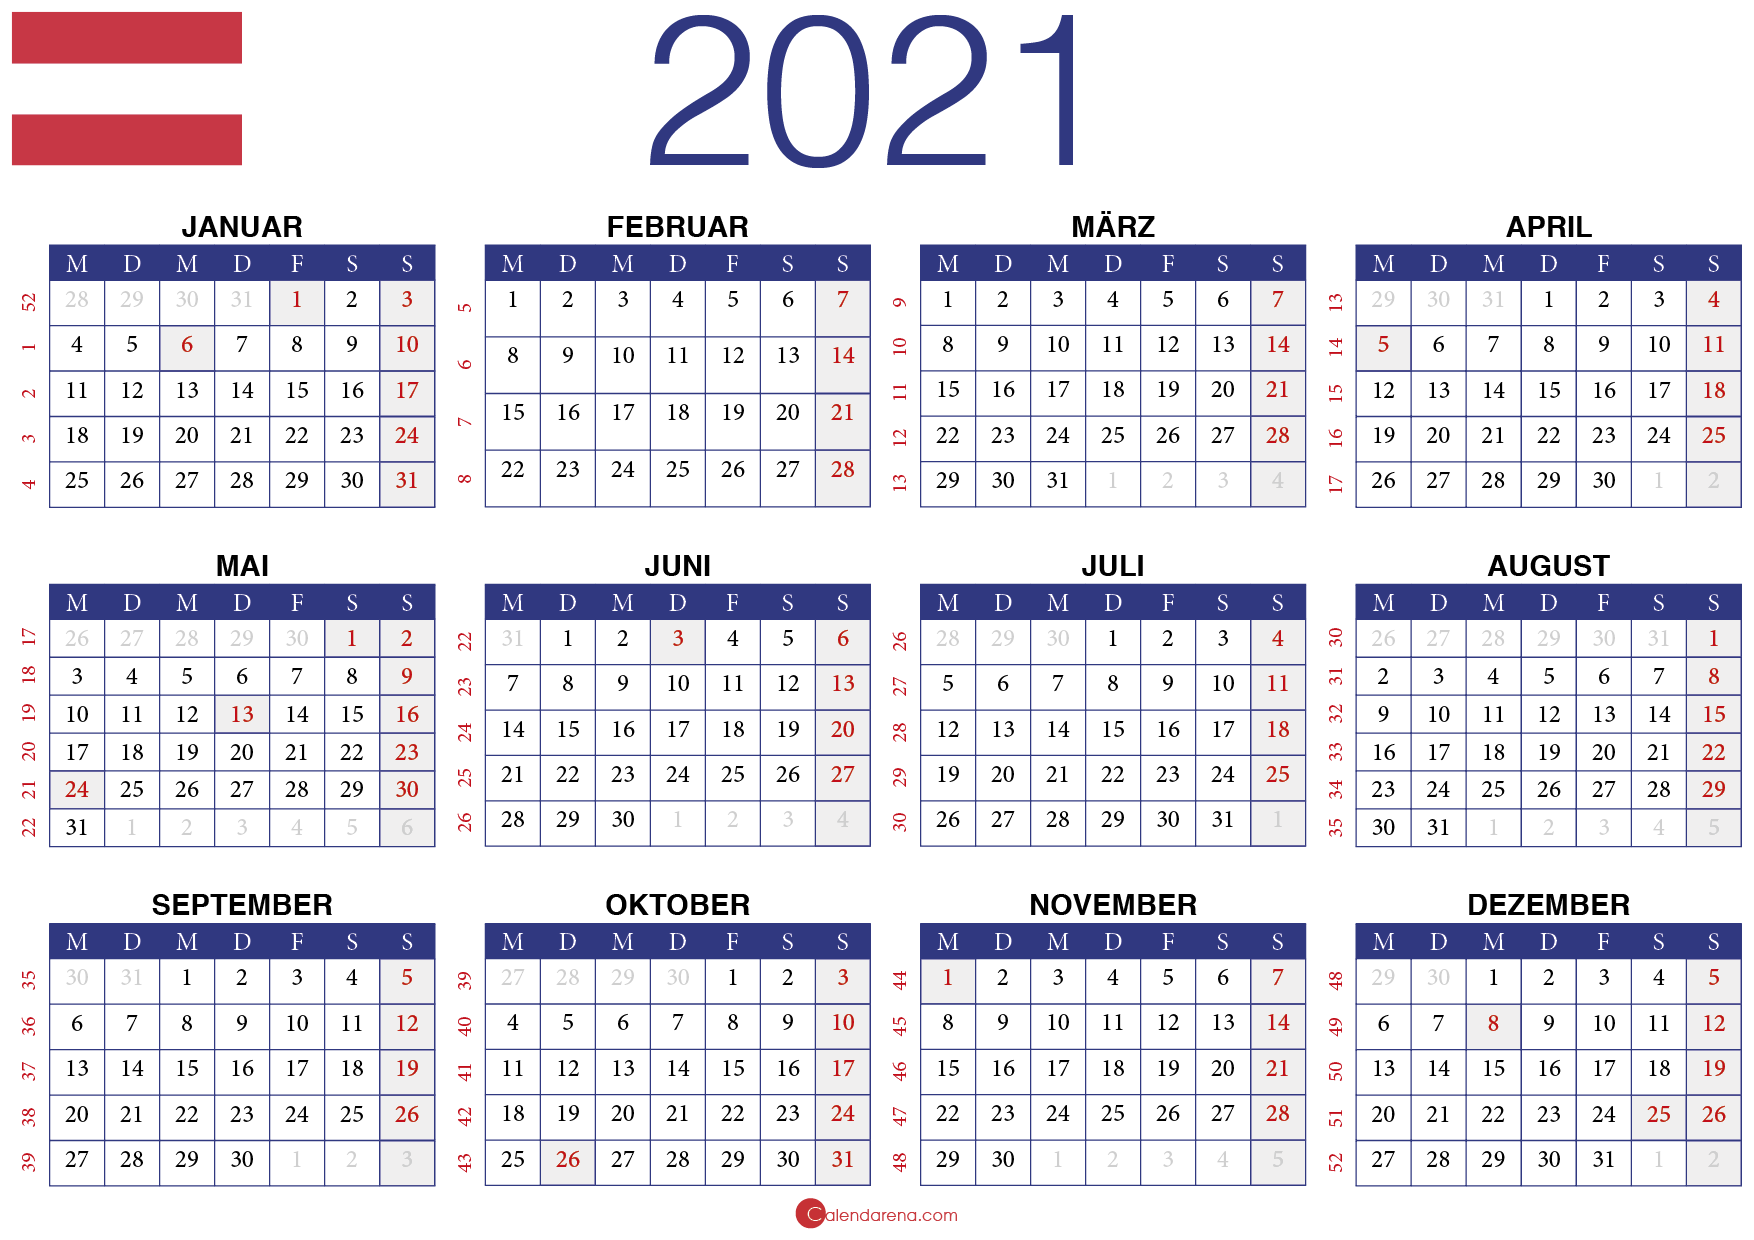 Jahreskalender 2021 Schweiz 馃嚚馃嚟